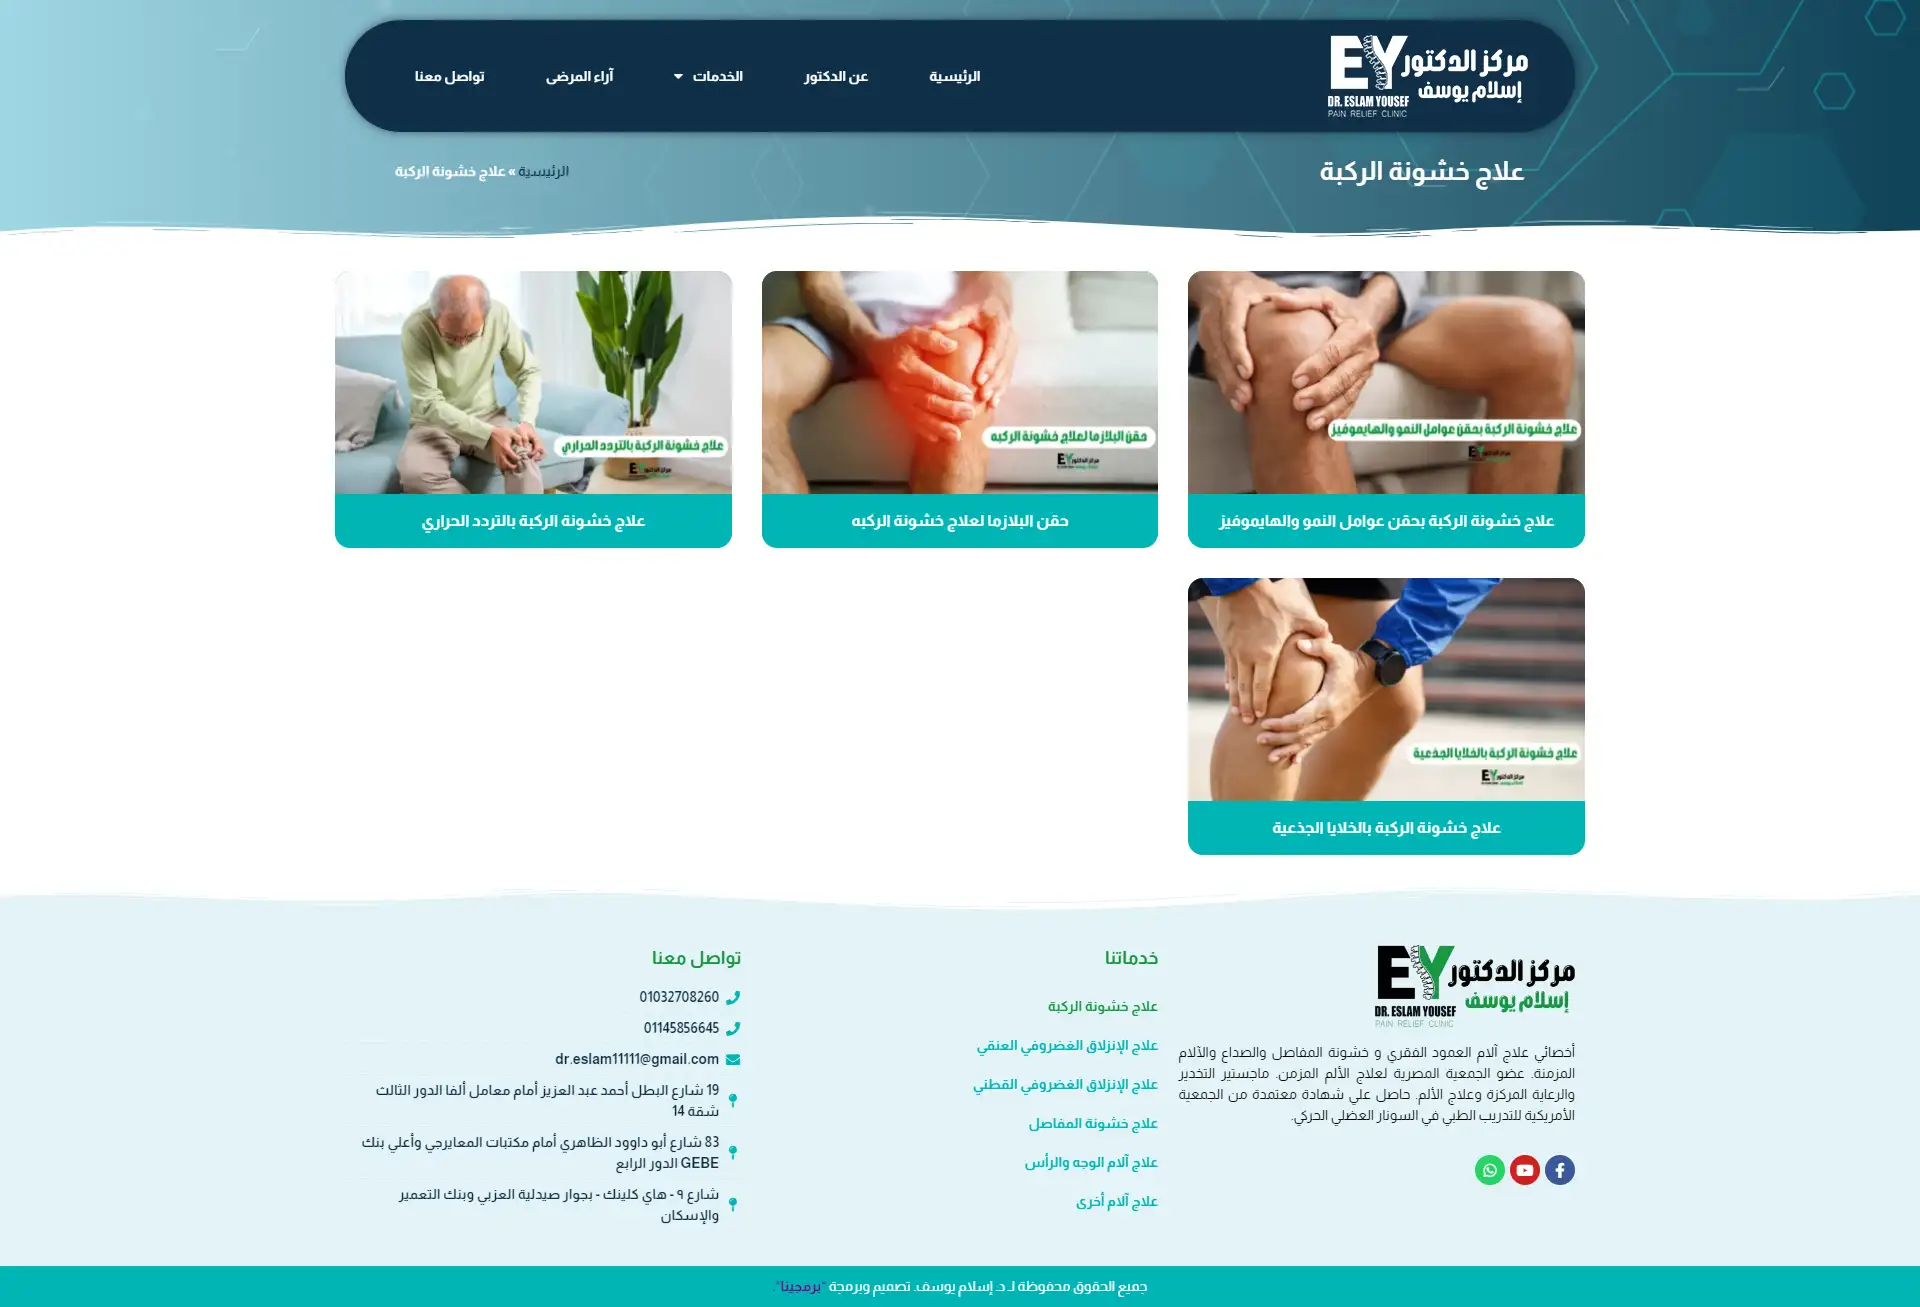 Dr. Eslam Yousef Medical Center Website